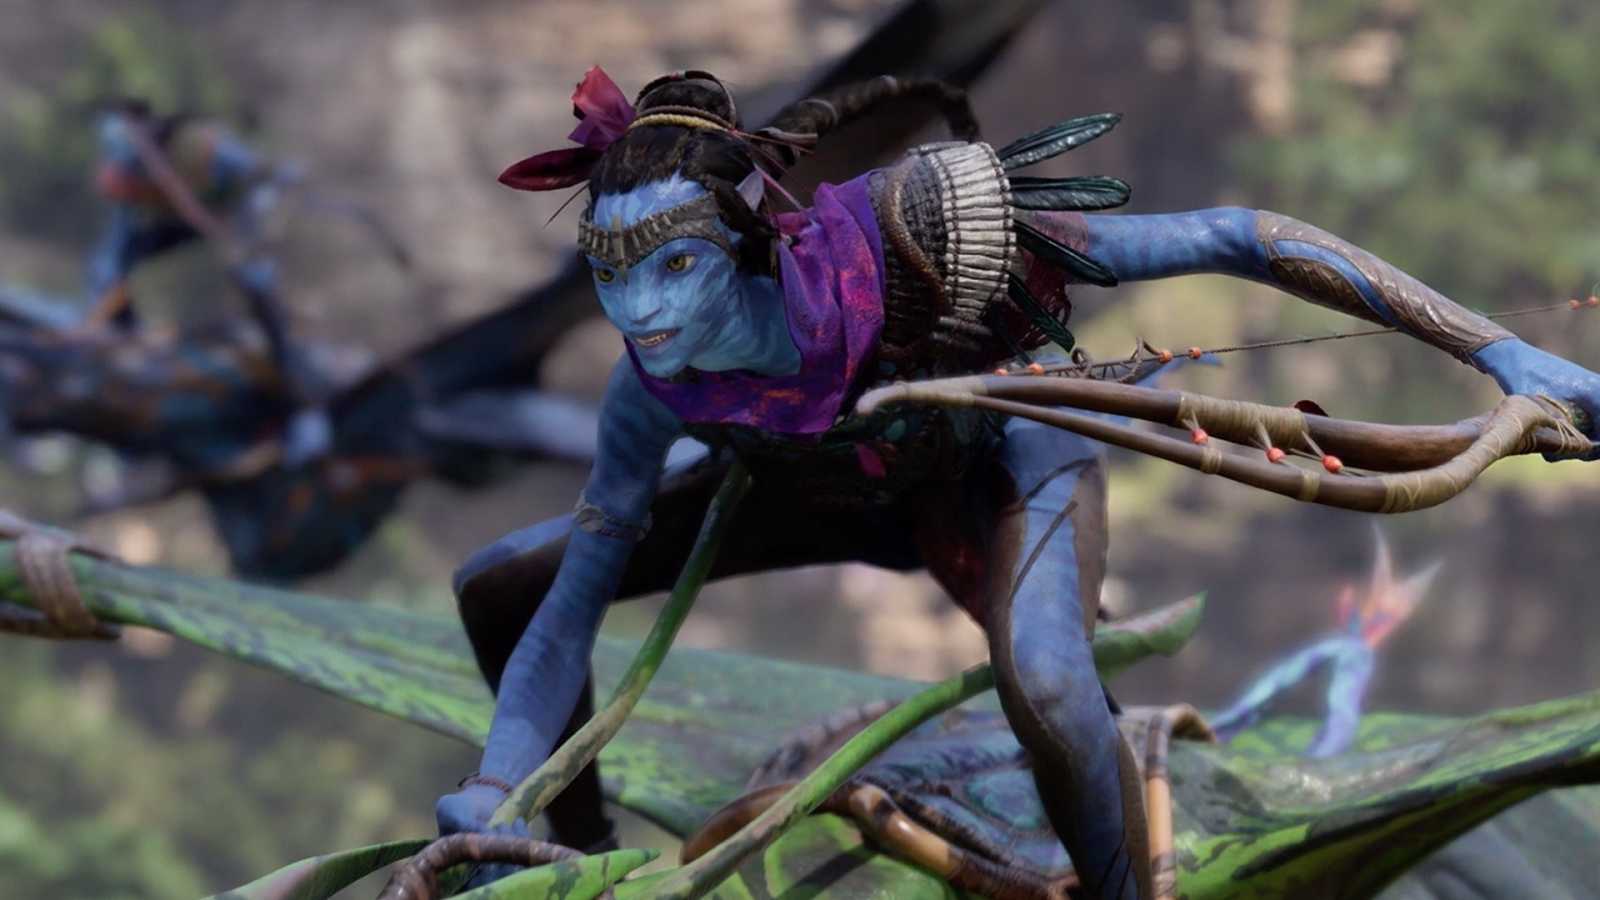 Recenze s odstupem - Avatar: Frontiers of Pandora, překrásná Ubisoftí hra